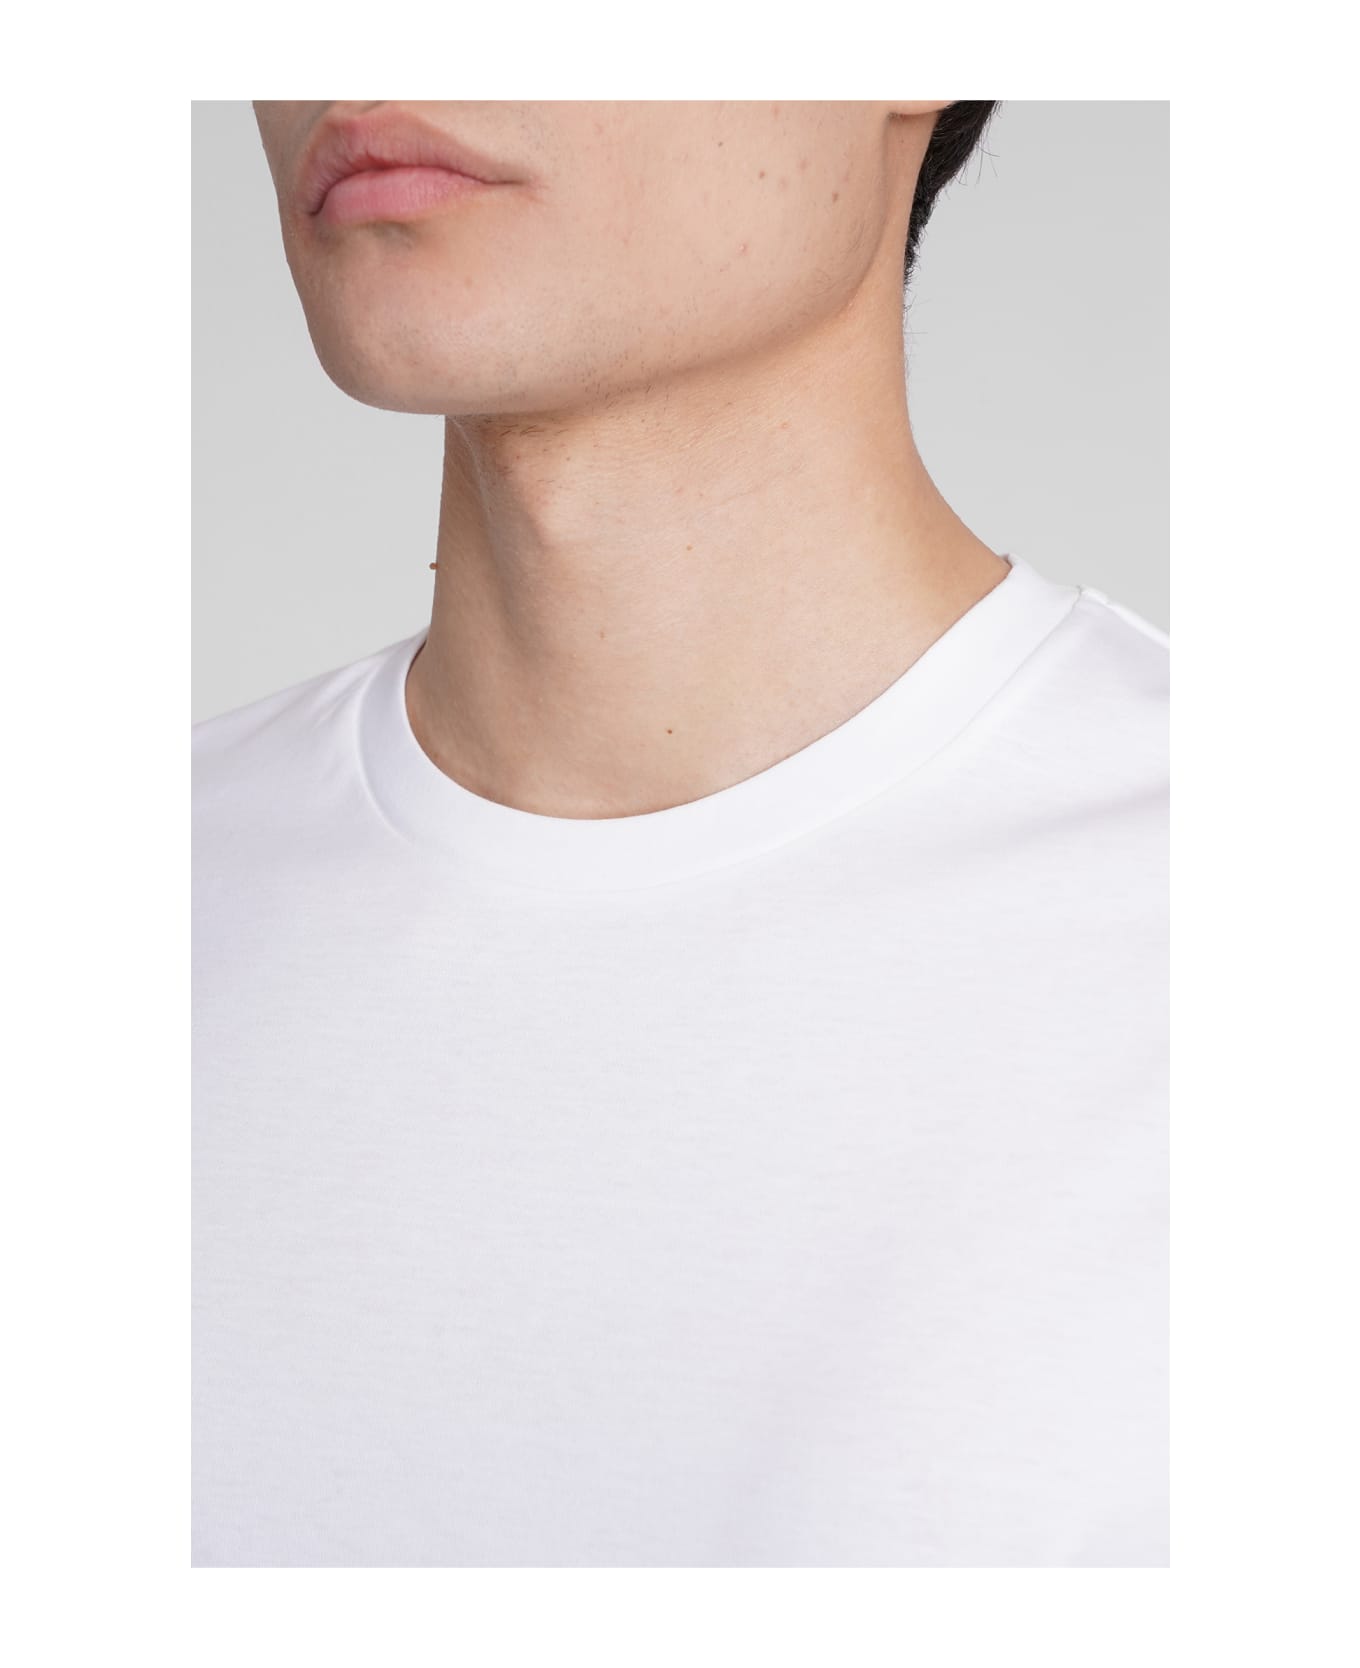 Giorgio Armani T-shirt In White Cotton - Bianco ottico